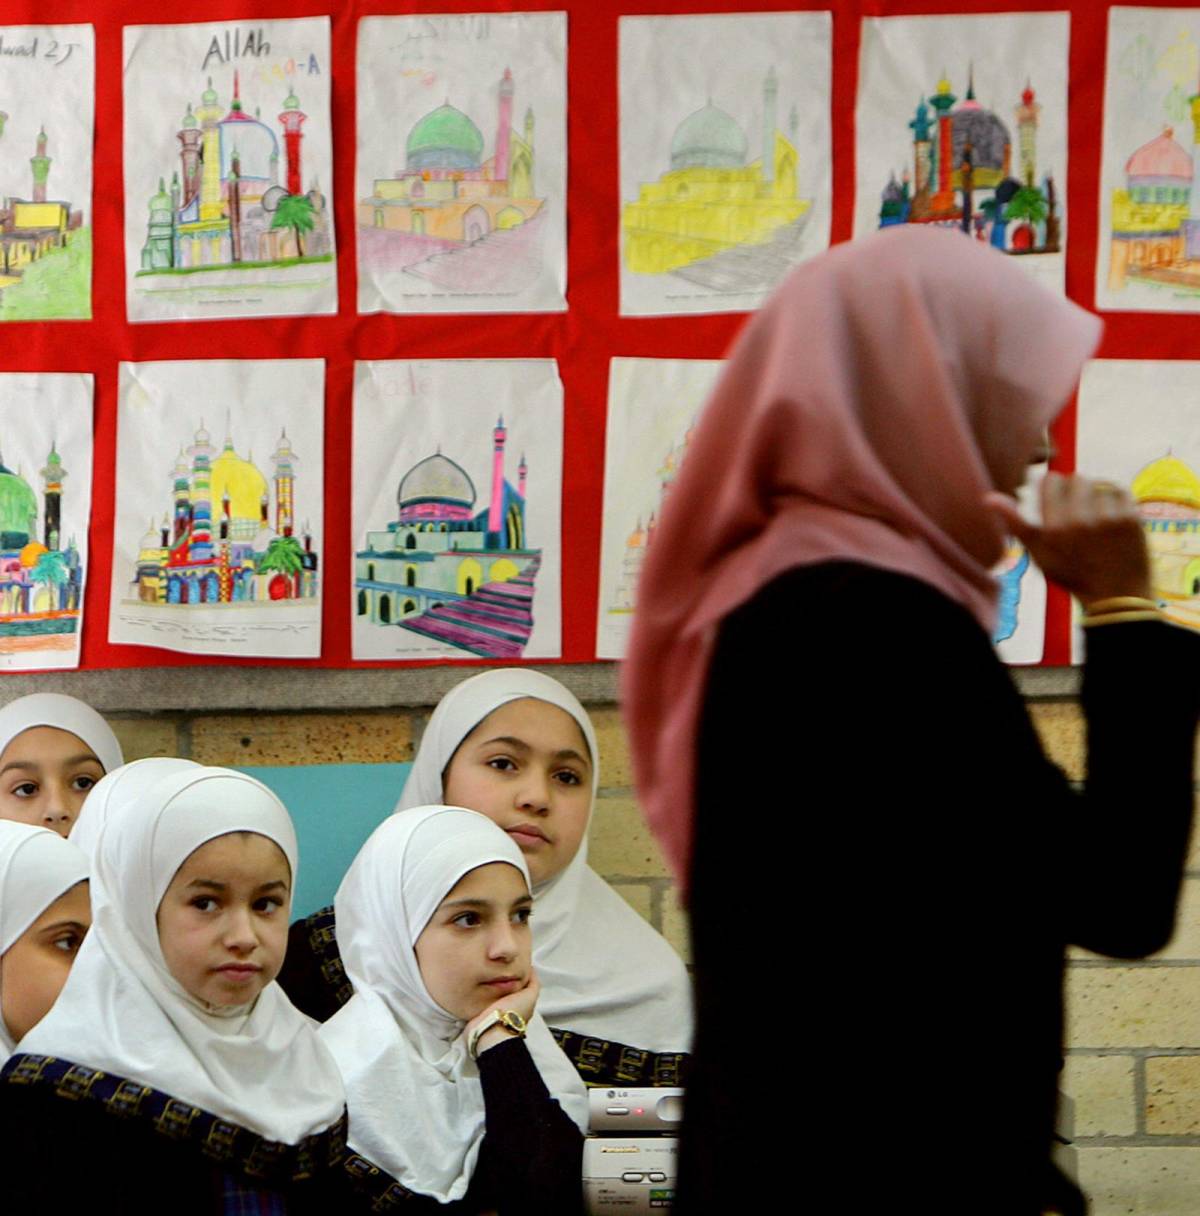 Scontro sulla scuola per i bimbi islamici